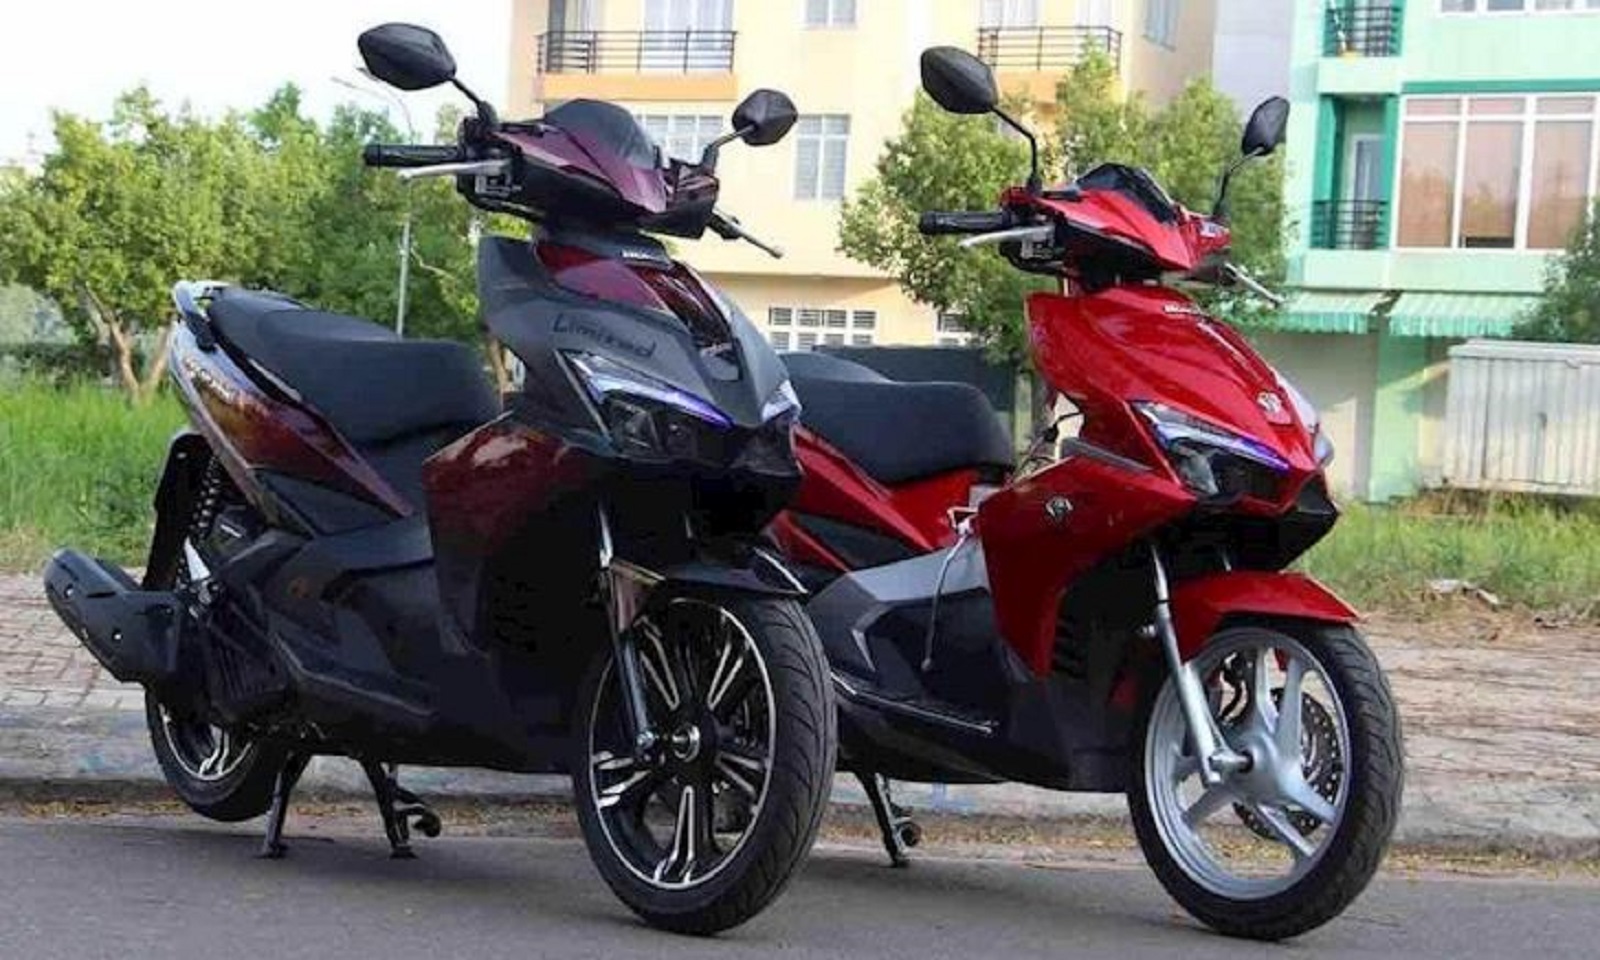 Cập nhật giá bán các mẫu xe máy Honda tại thị trường Việt - Ảnh 5.